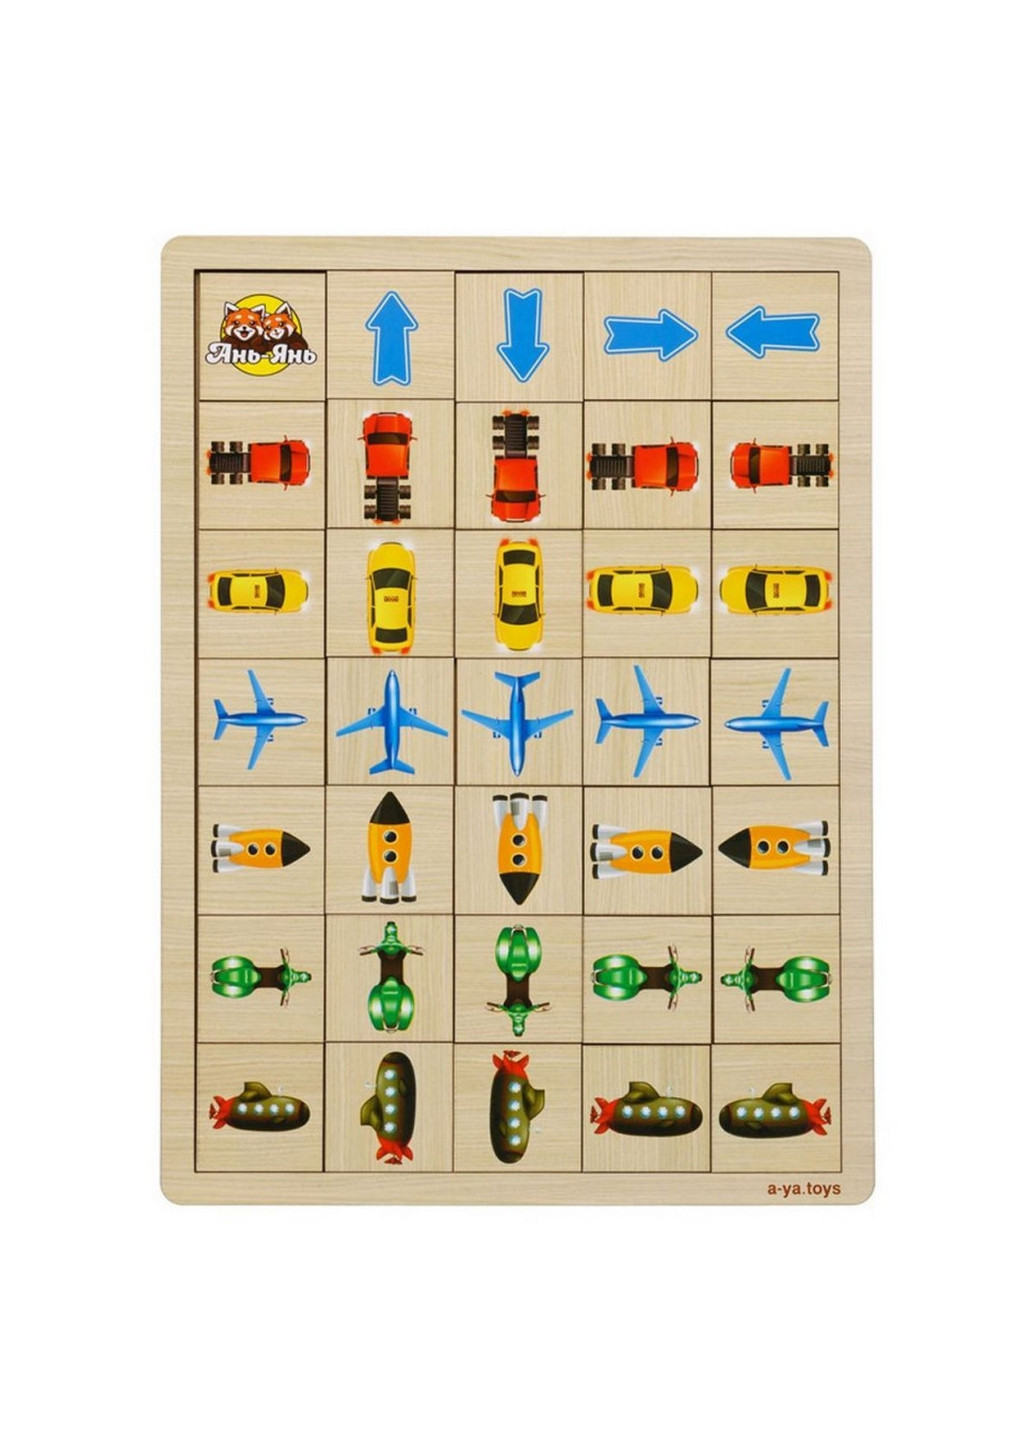 Деревянная настольная игра "Укажите направление - 1" пазл-сортер 1х33х24 см Ubumblebees (260497962)